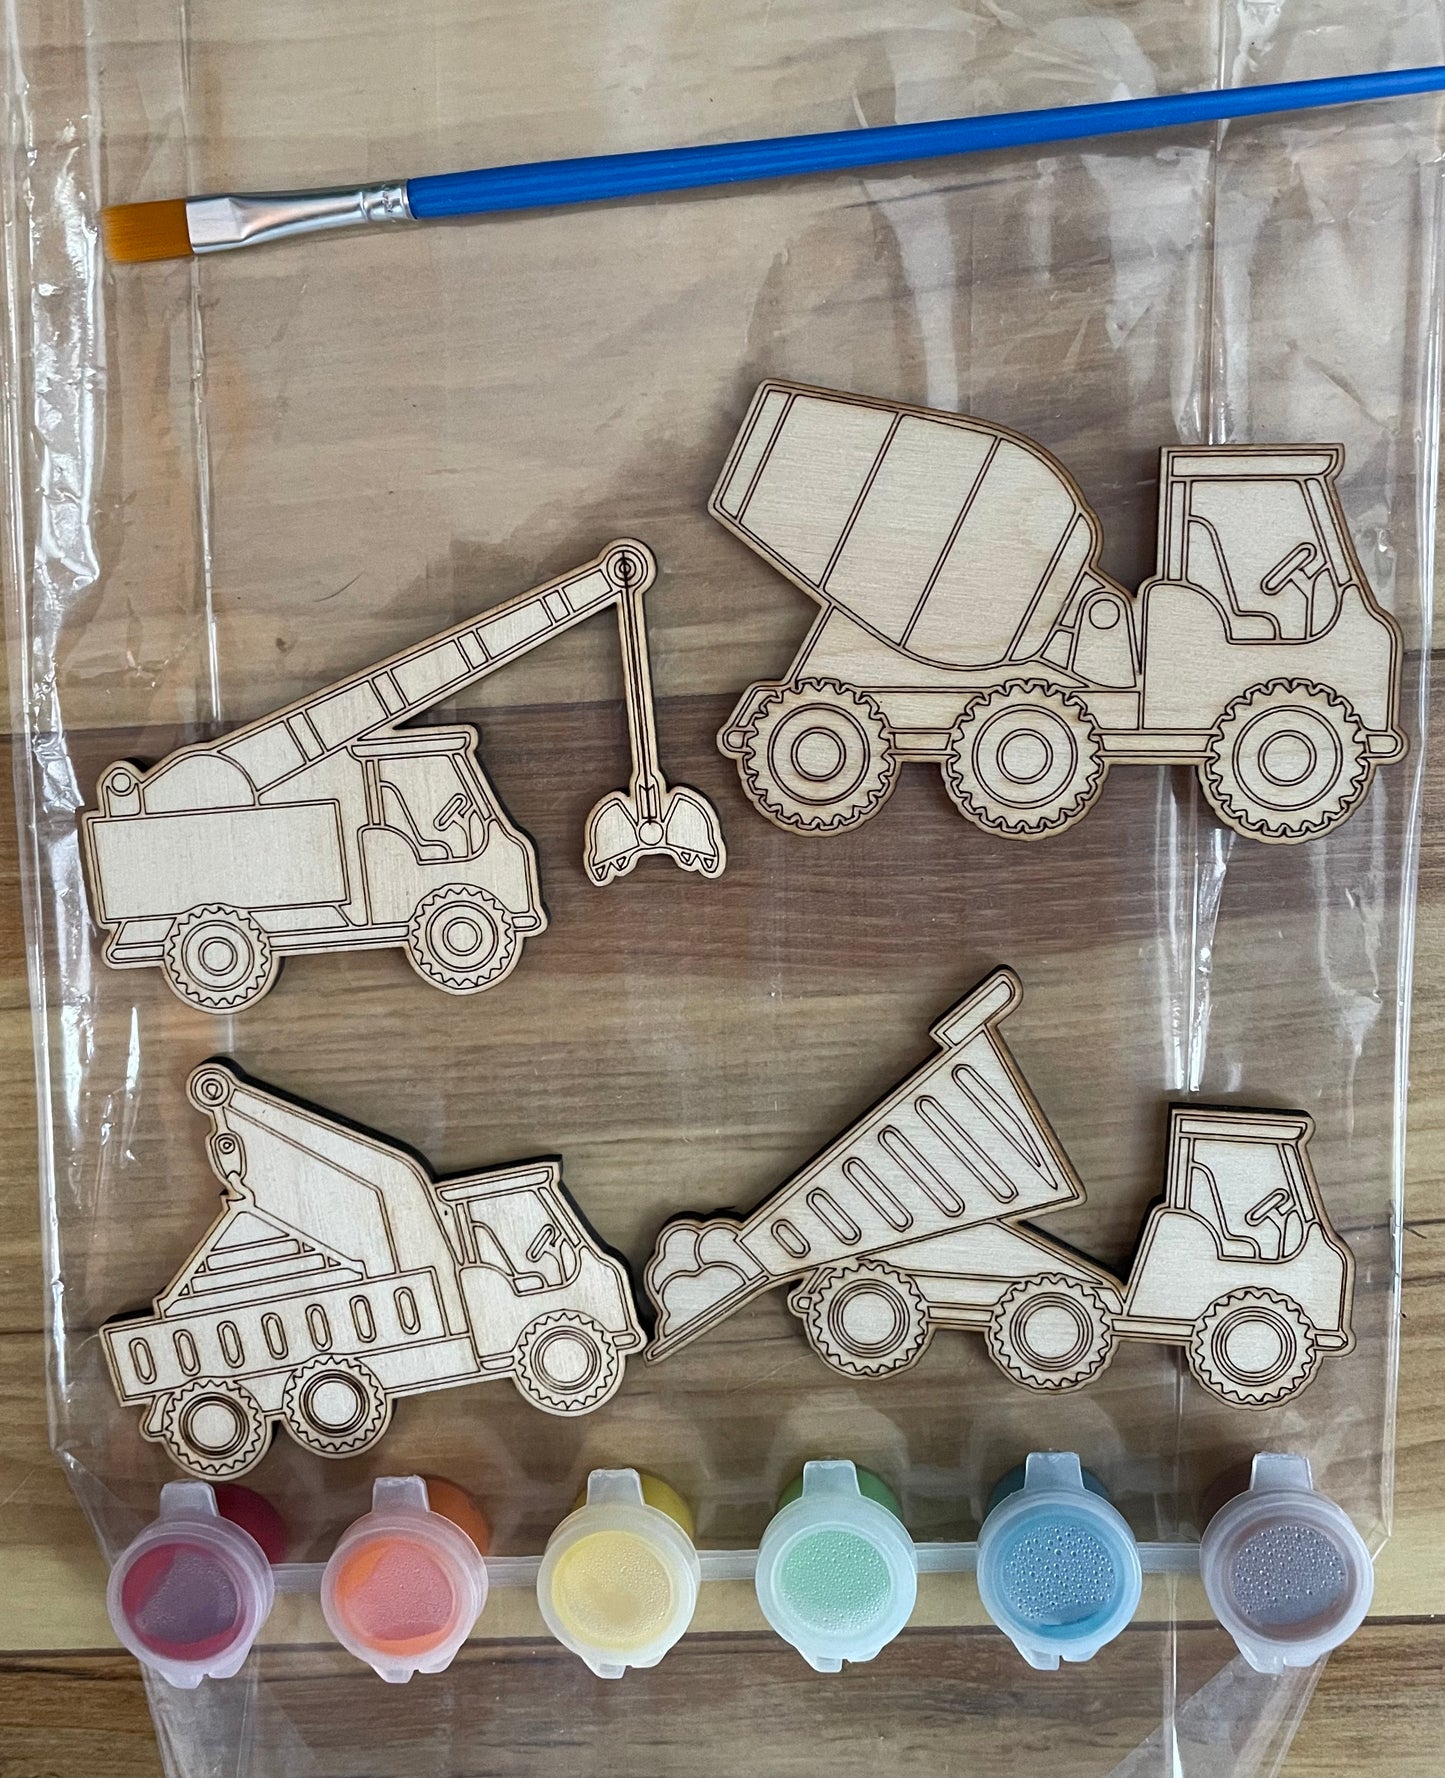 DIY Construction Paint Kit